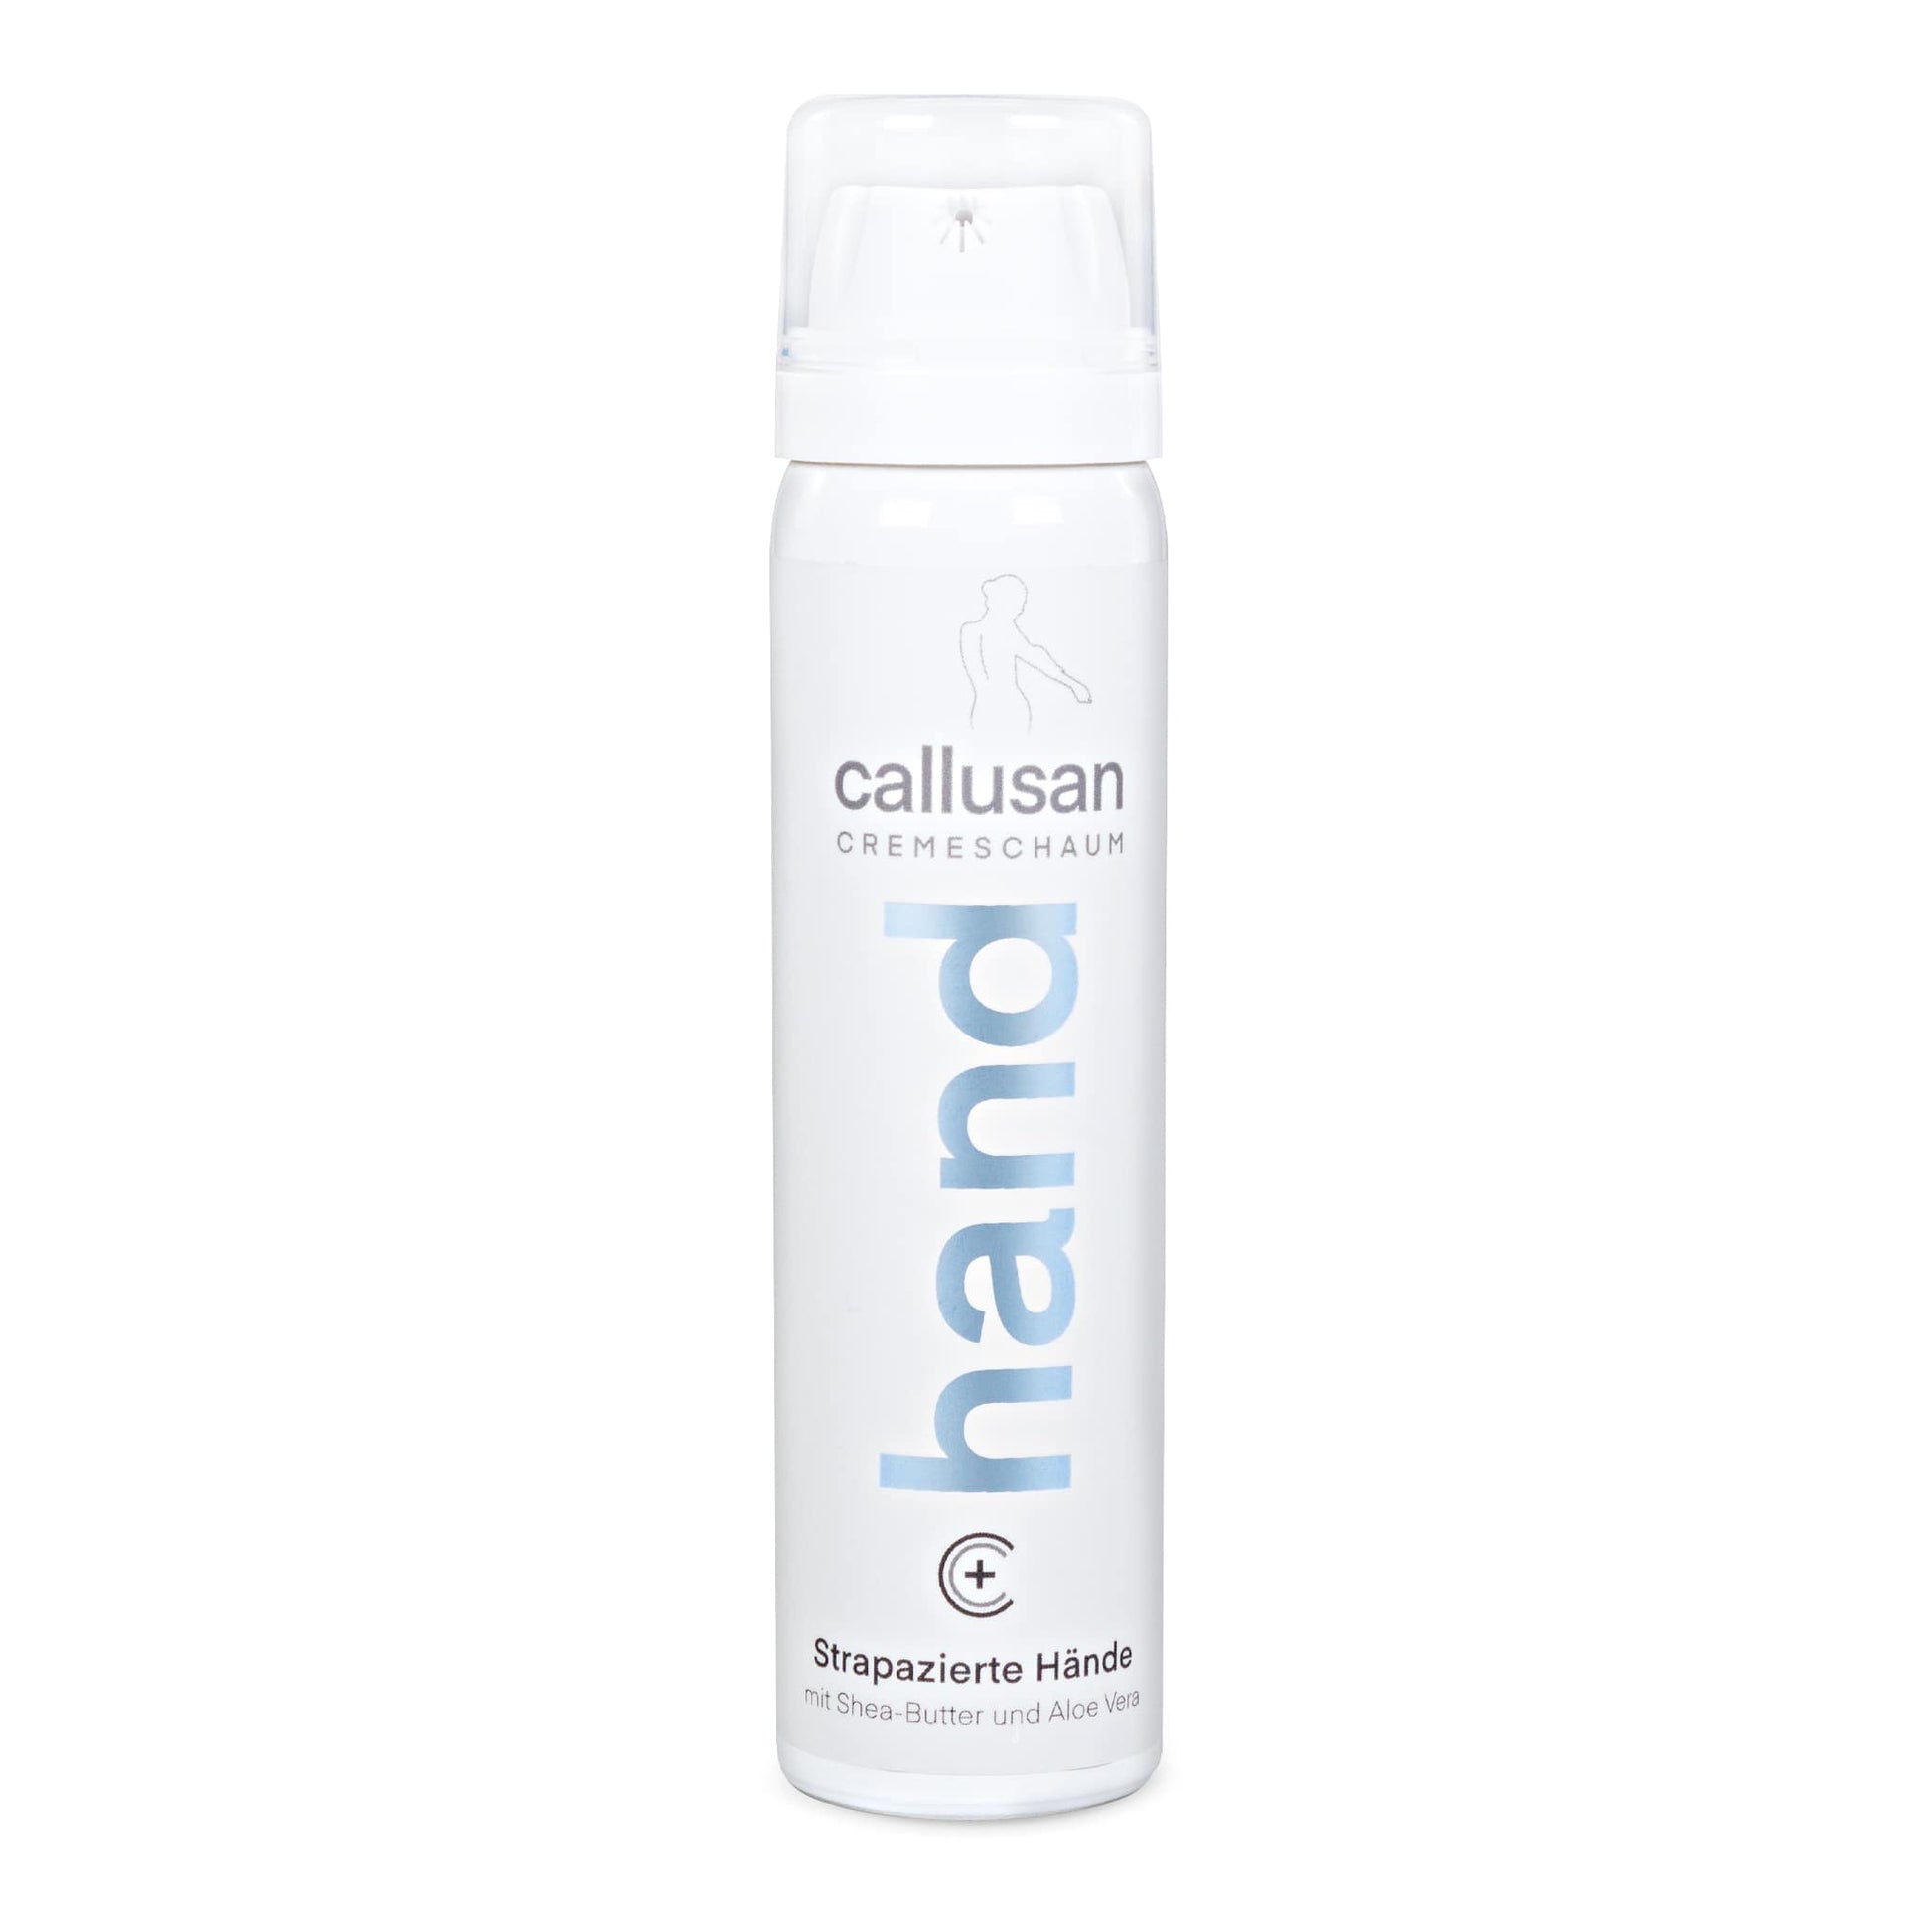 dump Moederland kiezen Callusan handcrème foam goedkoop bestellen bij 😍 ND24 NailDesign